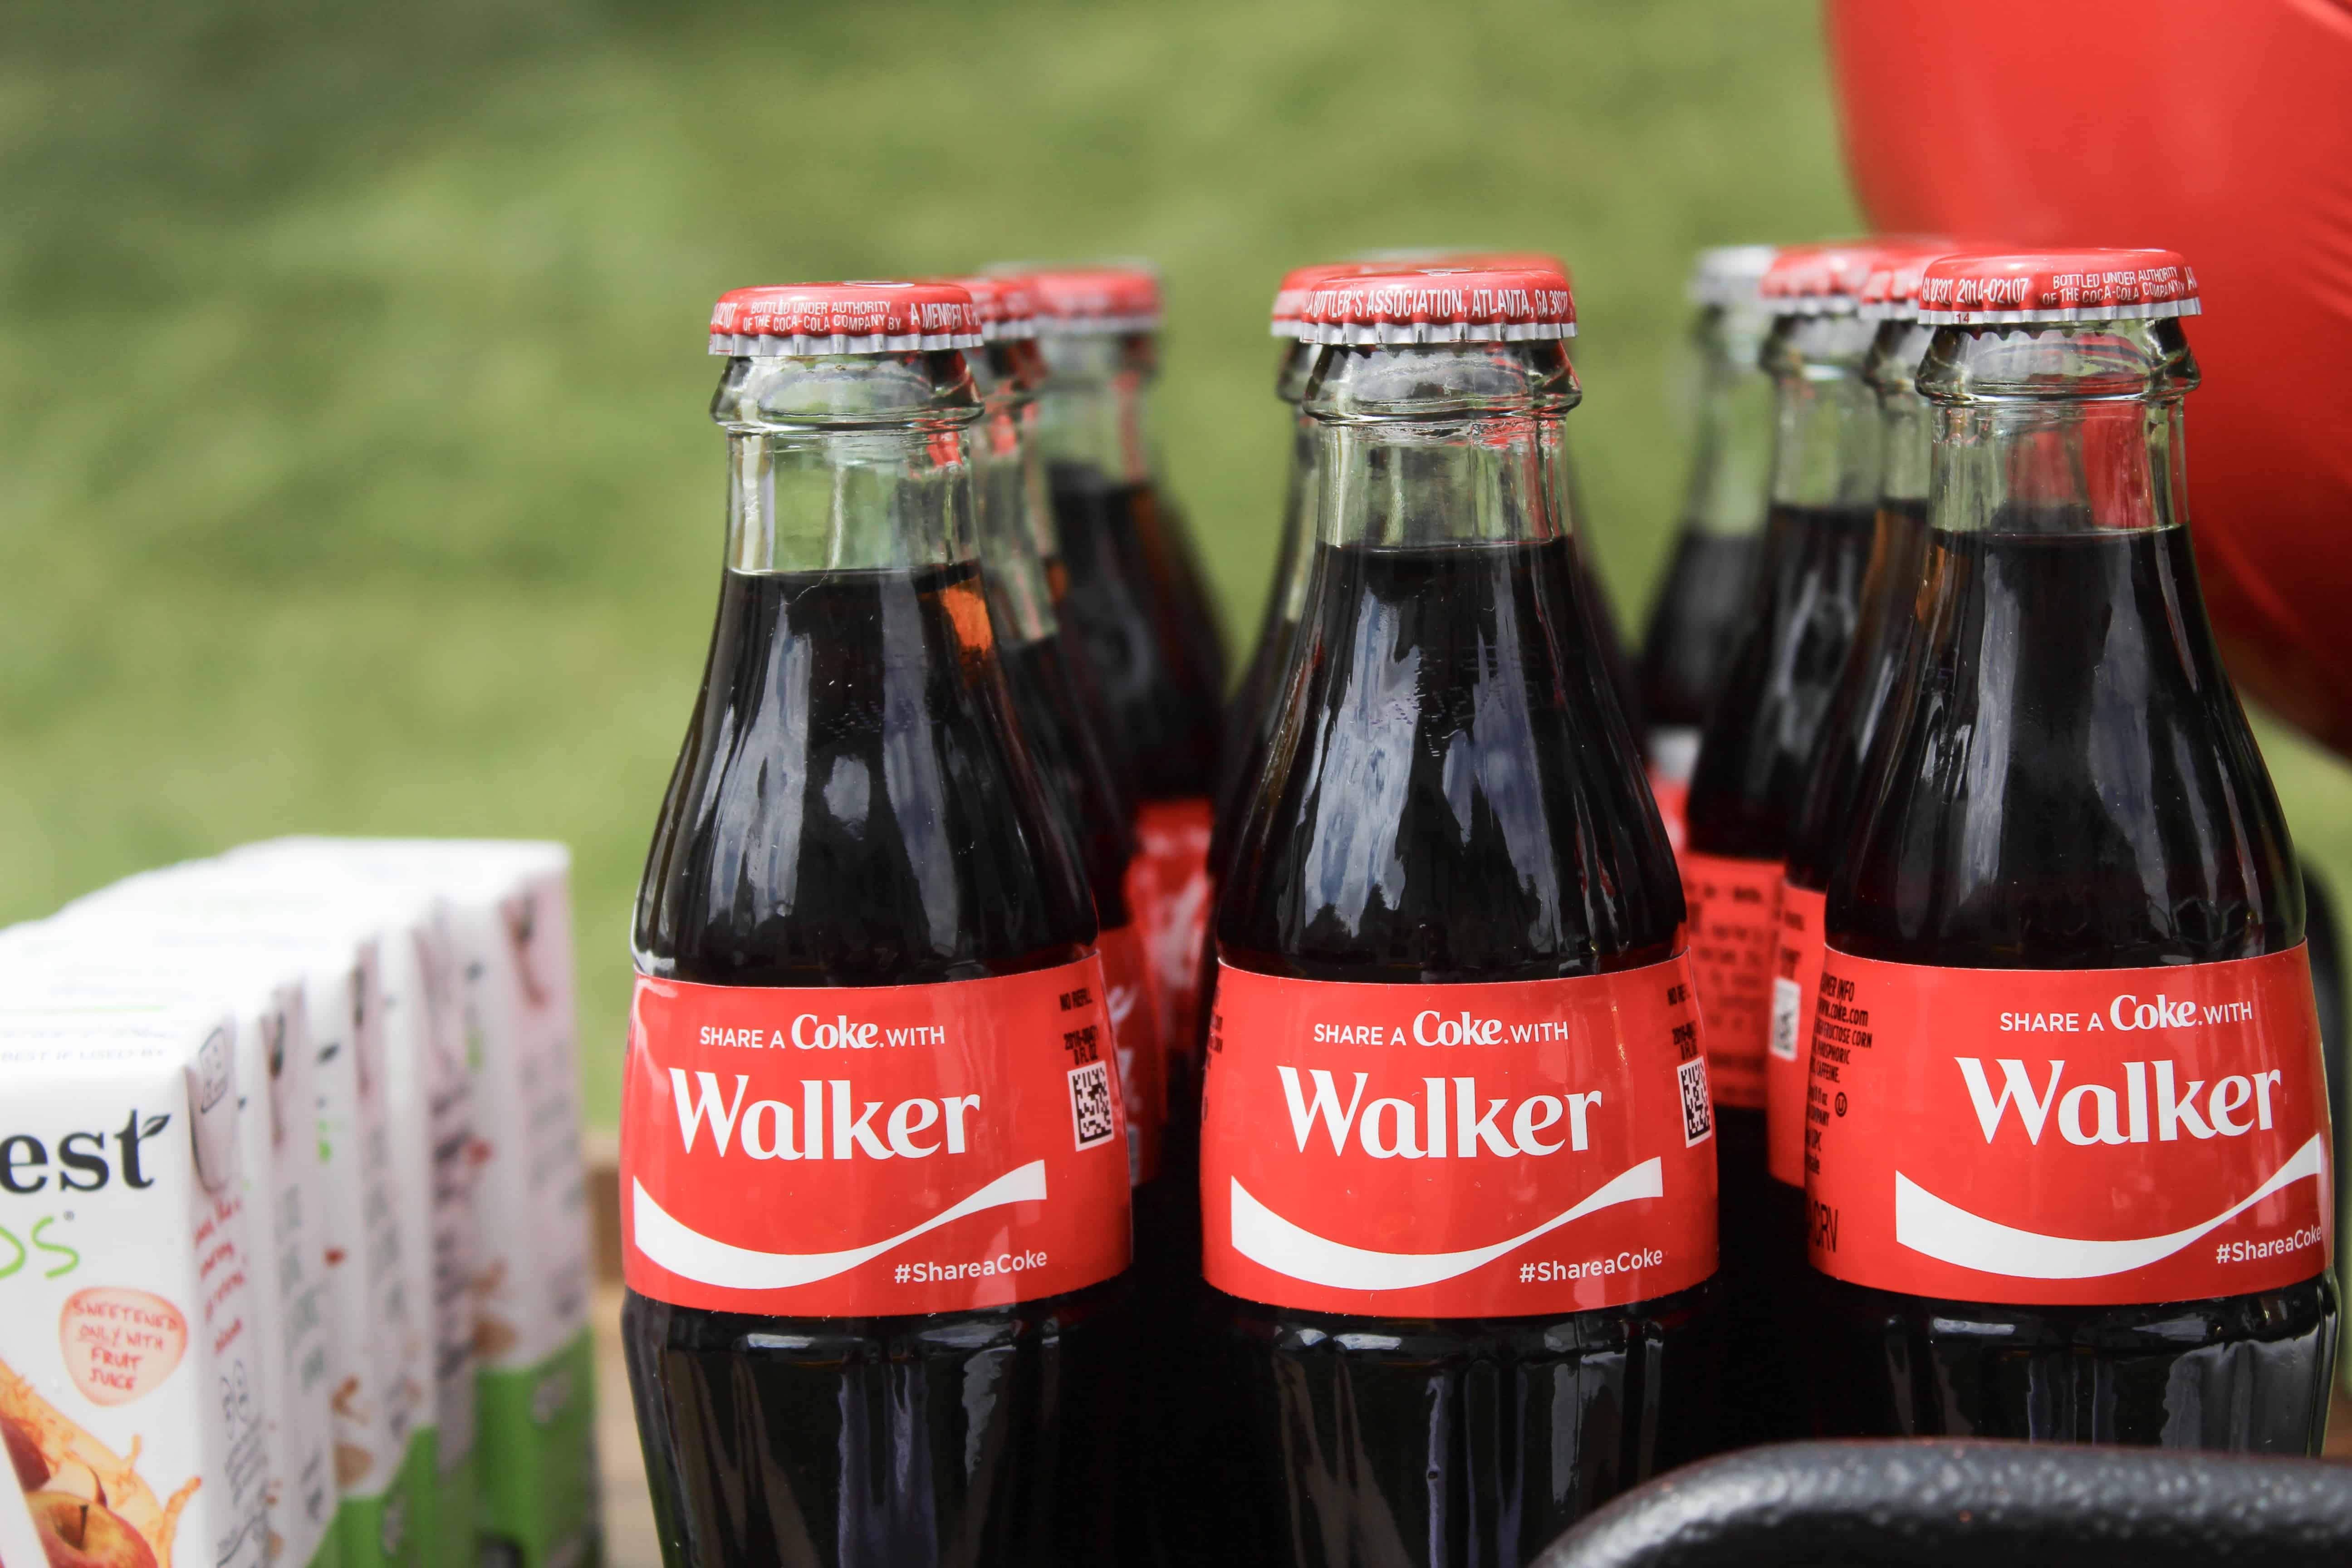 Walker cokes